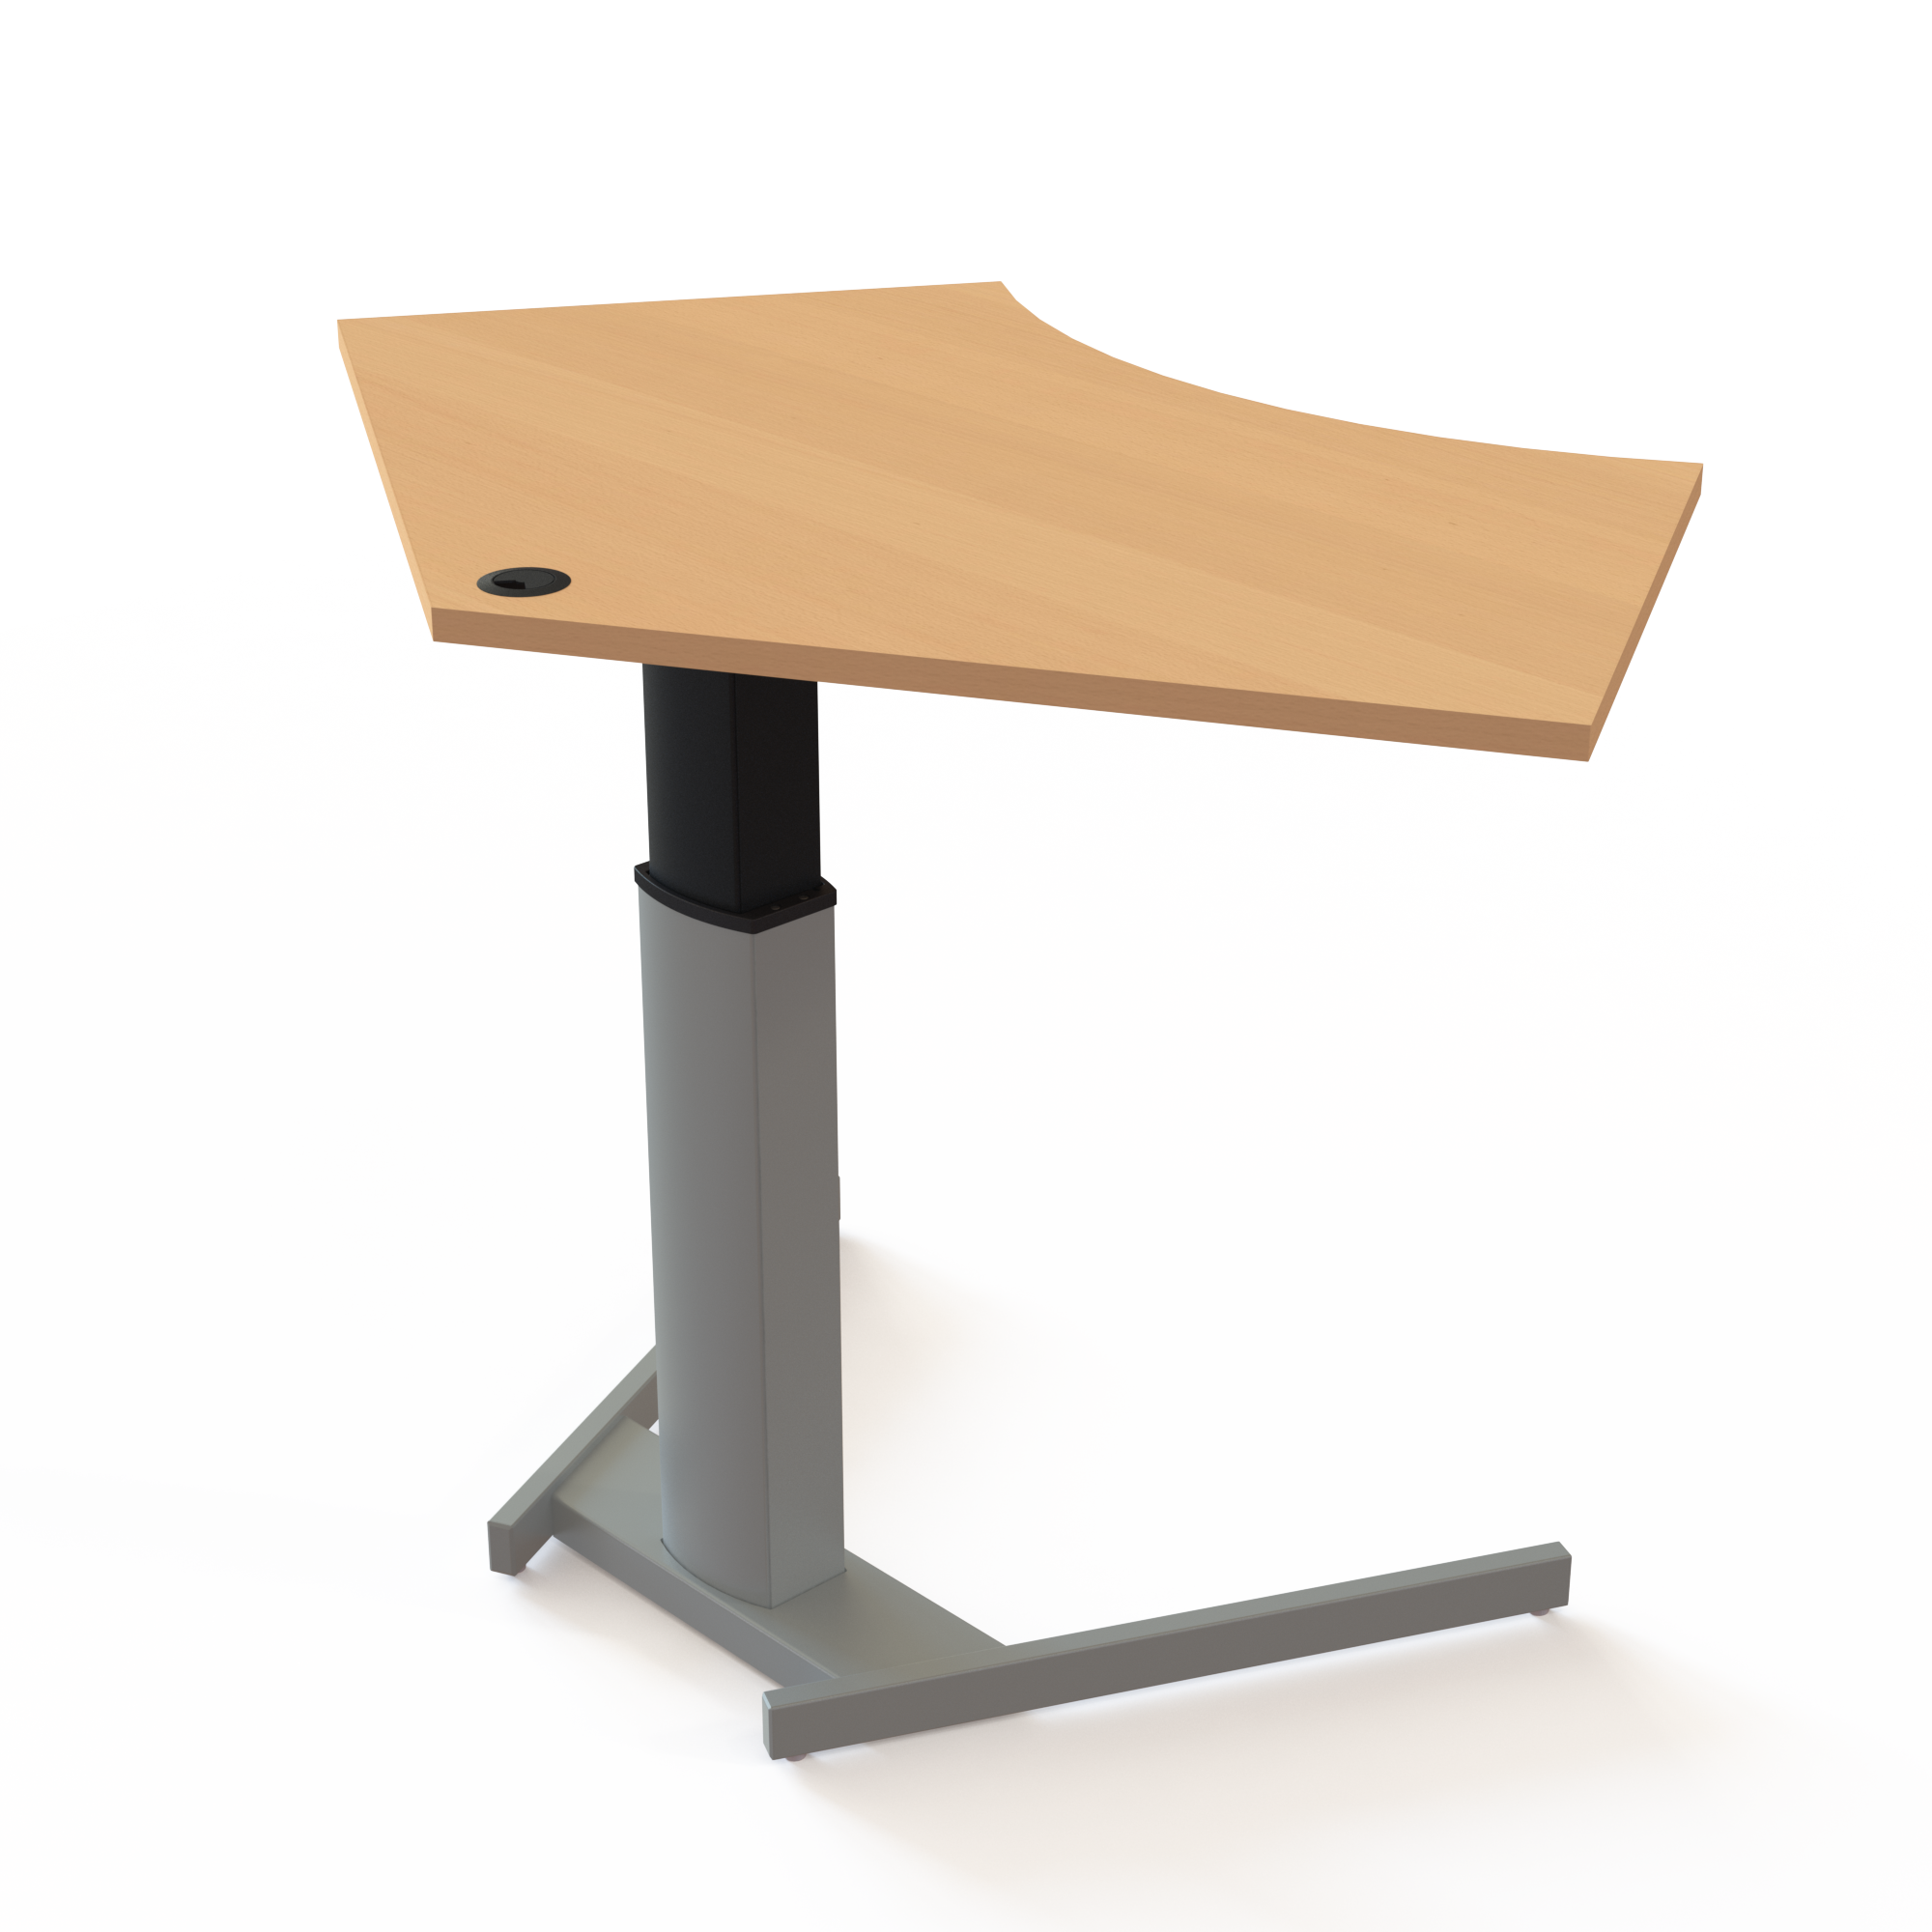 Schreibtisch steh/sitz | 138x92 cm | Buche mit silbernem Gestell